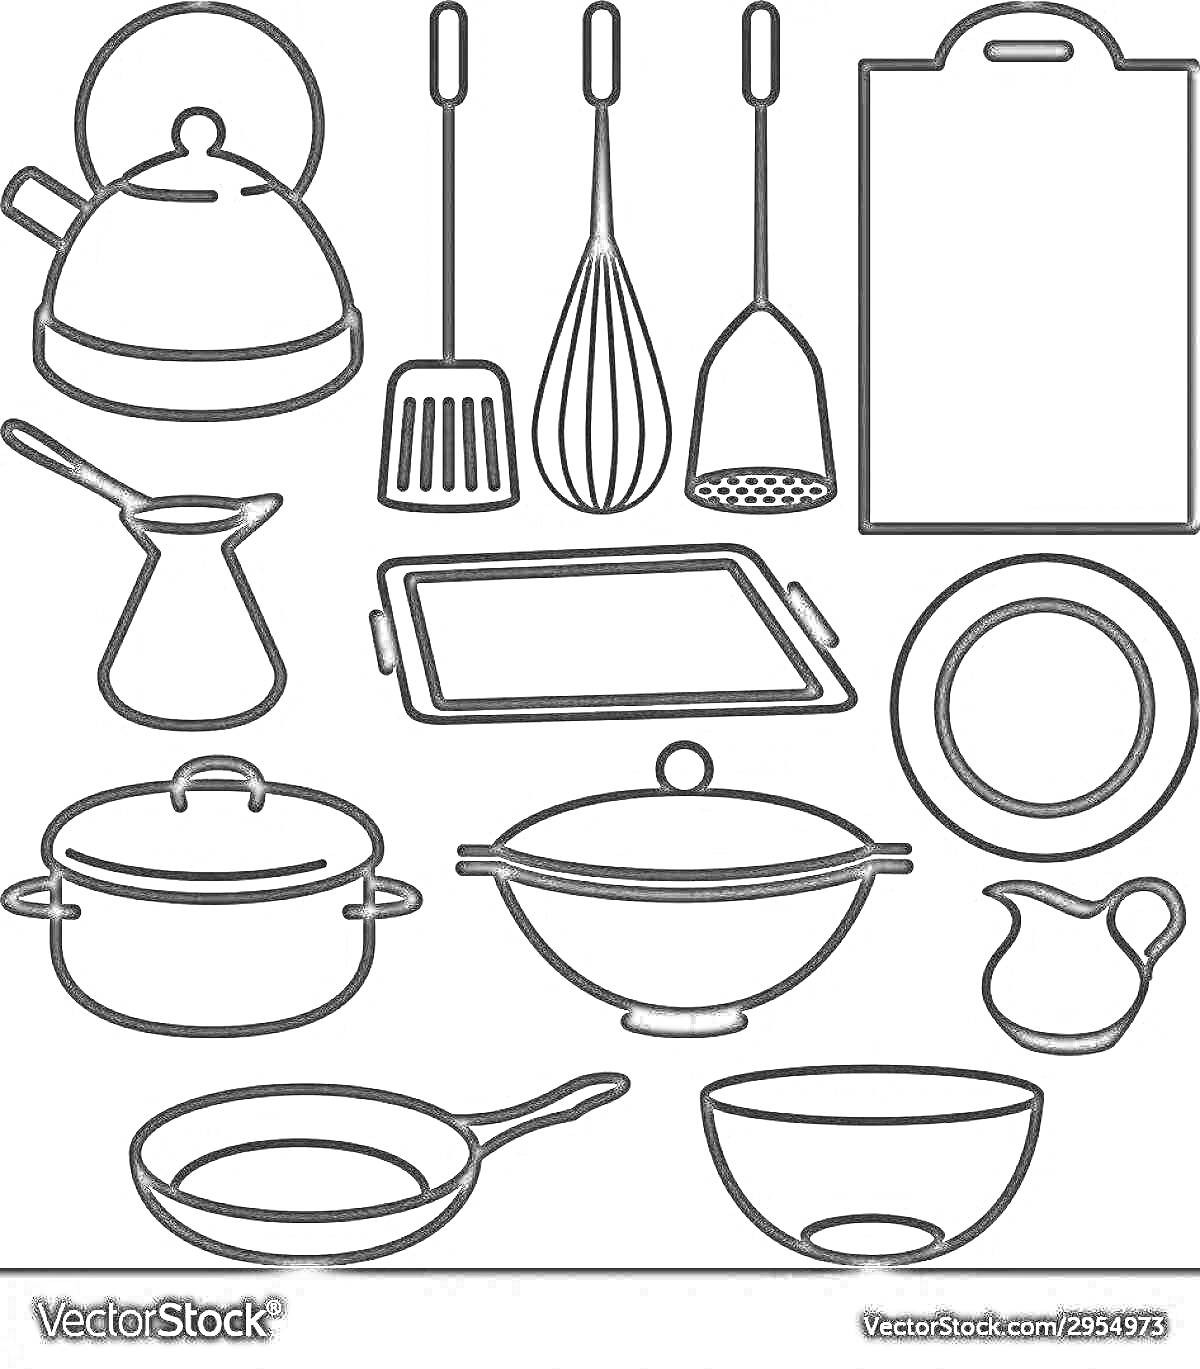 Раскраска Набор кухонных приборов с чайником, лопаткой, венчиком, картофелемялкой, разделочной доской, туркой, противнем, кастрюлей, сотейником с крышкой, тарелкой, маленьким кувшином, сковородой и миской.